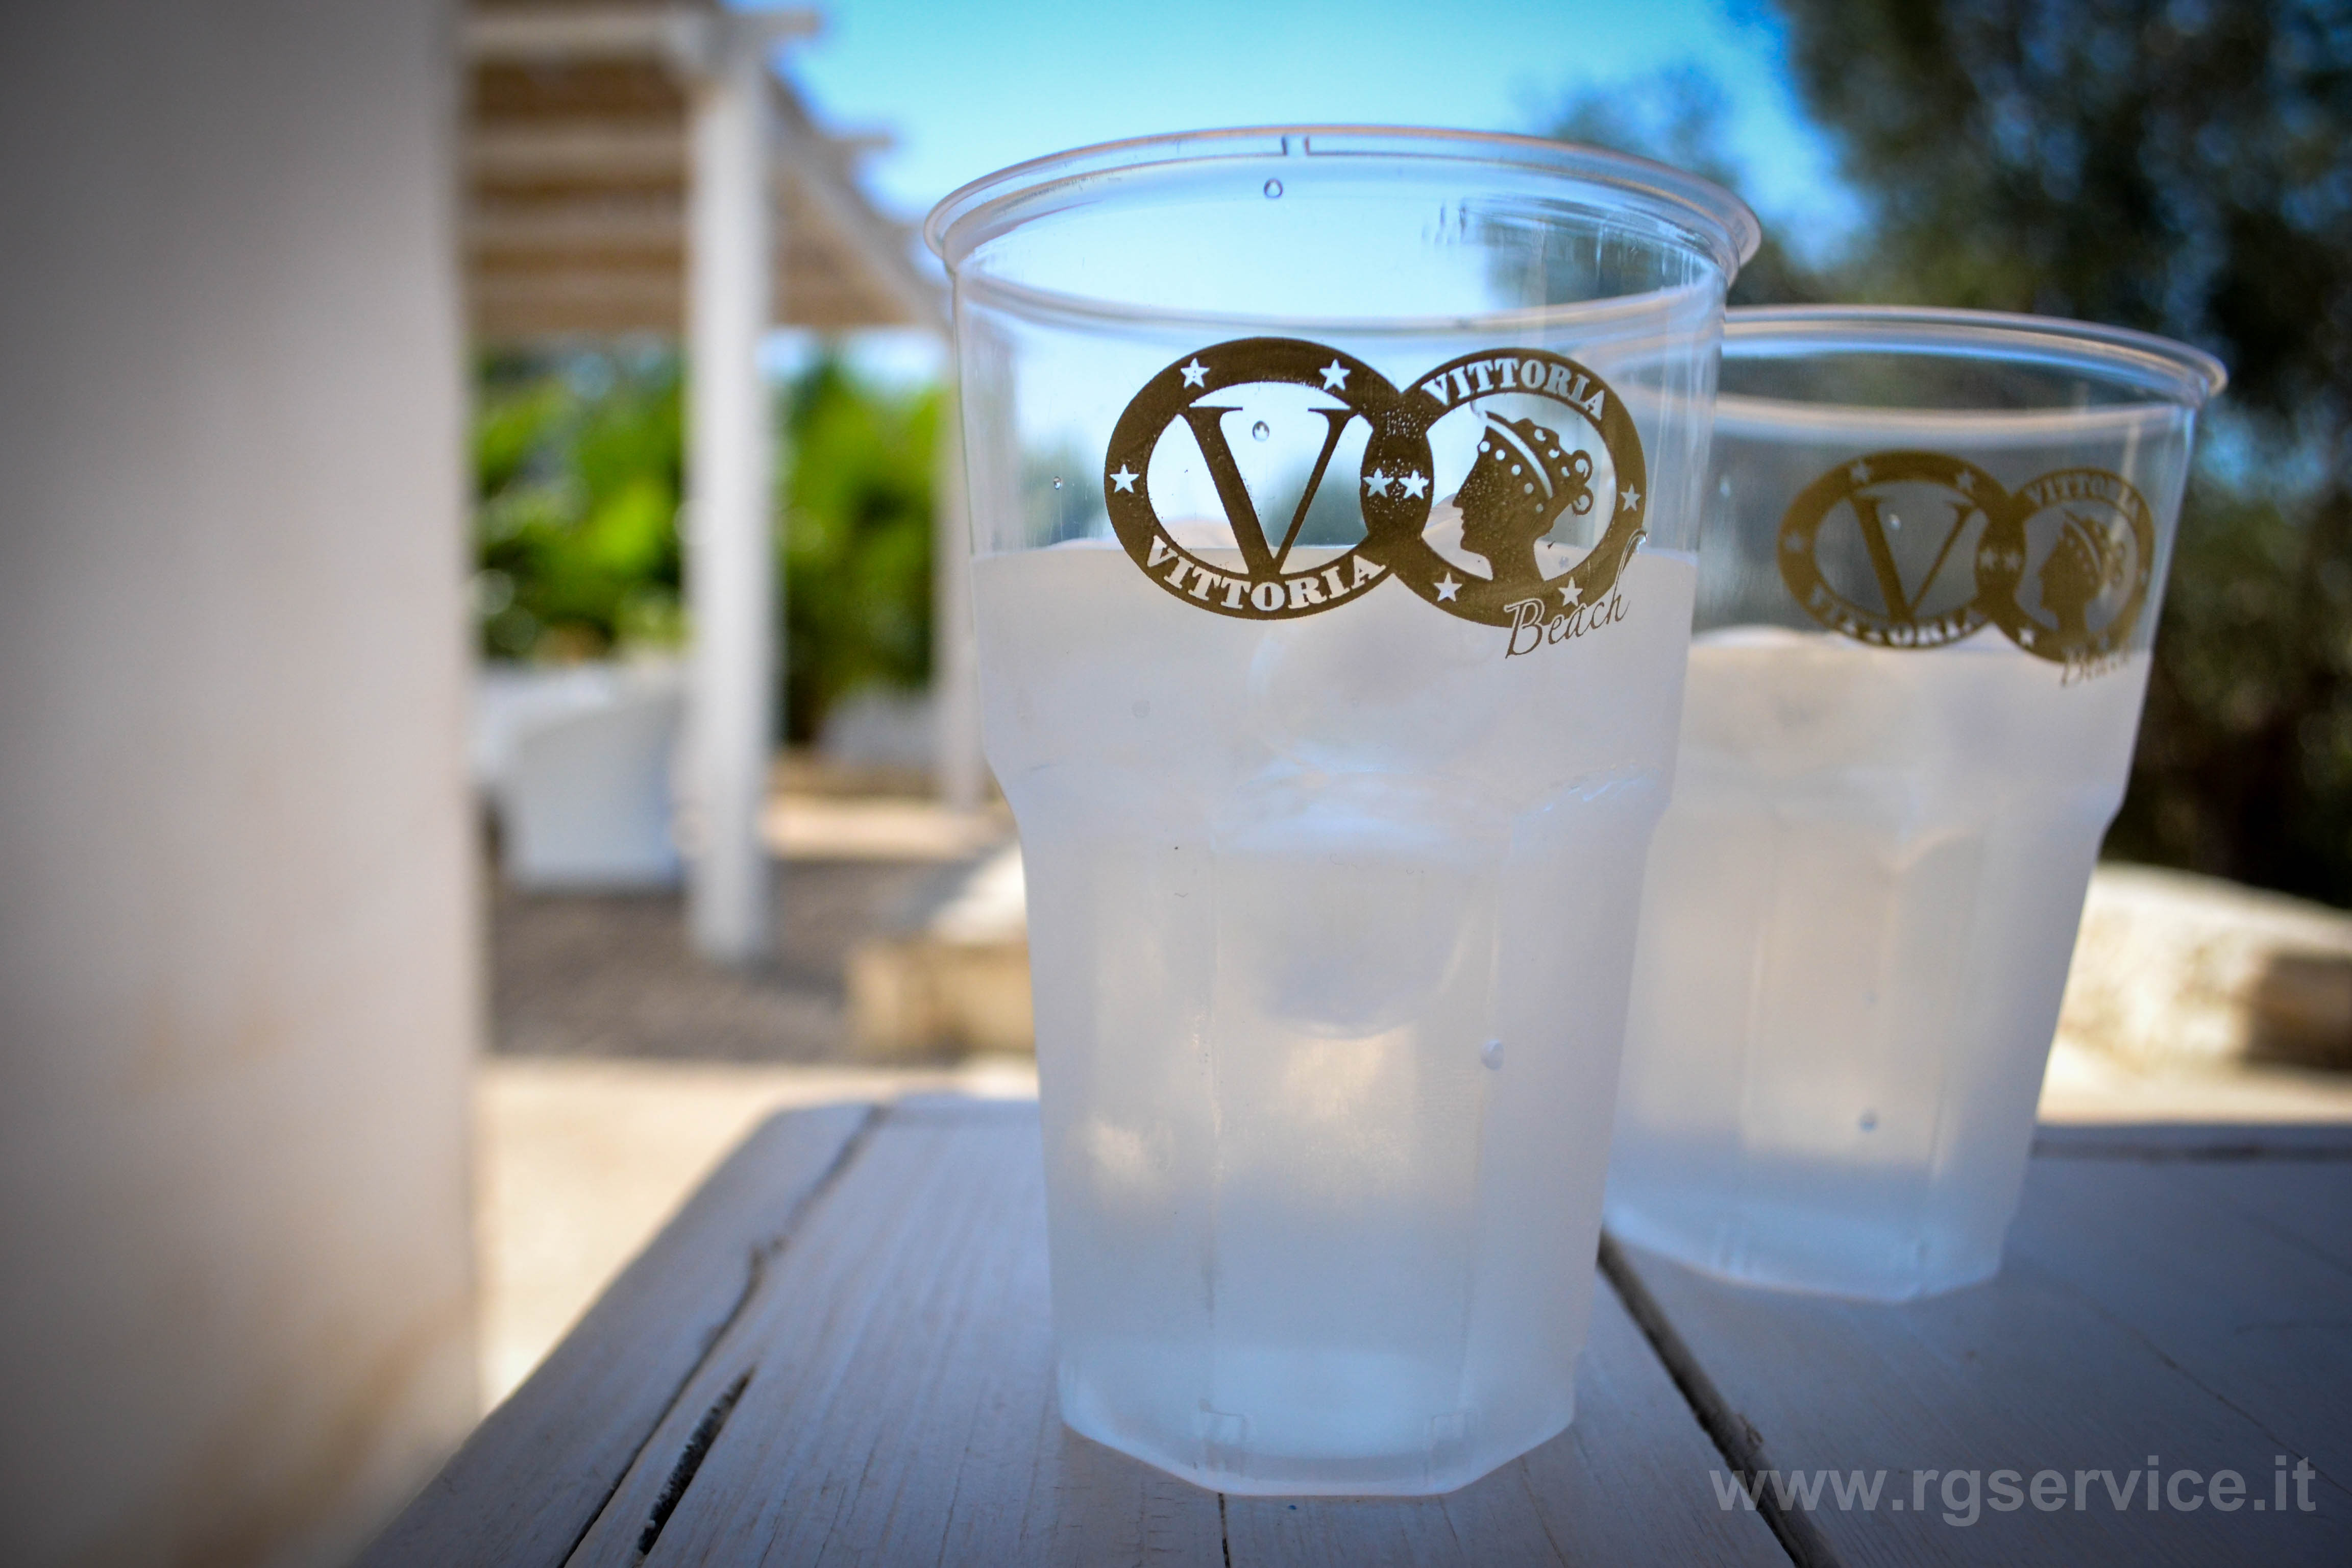 Bicchieri infrangili e monouso – Personalizzazione di bicchieri